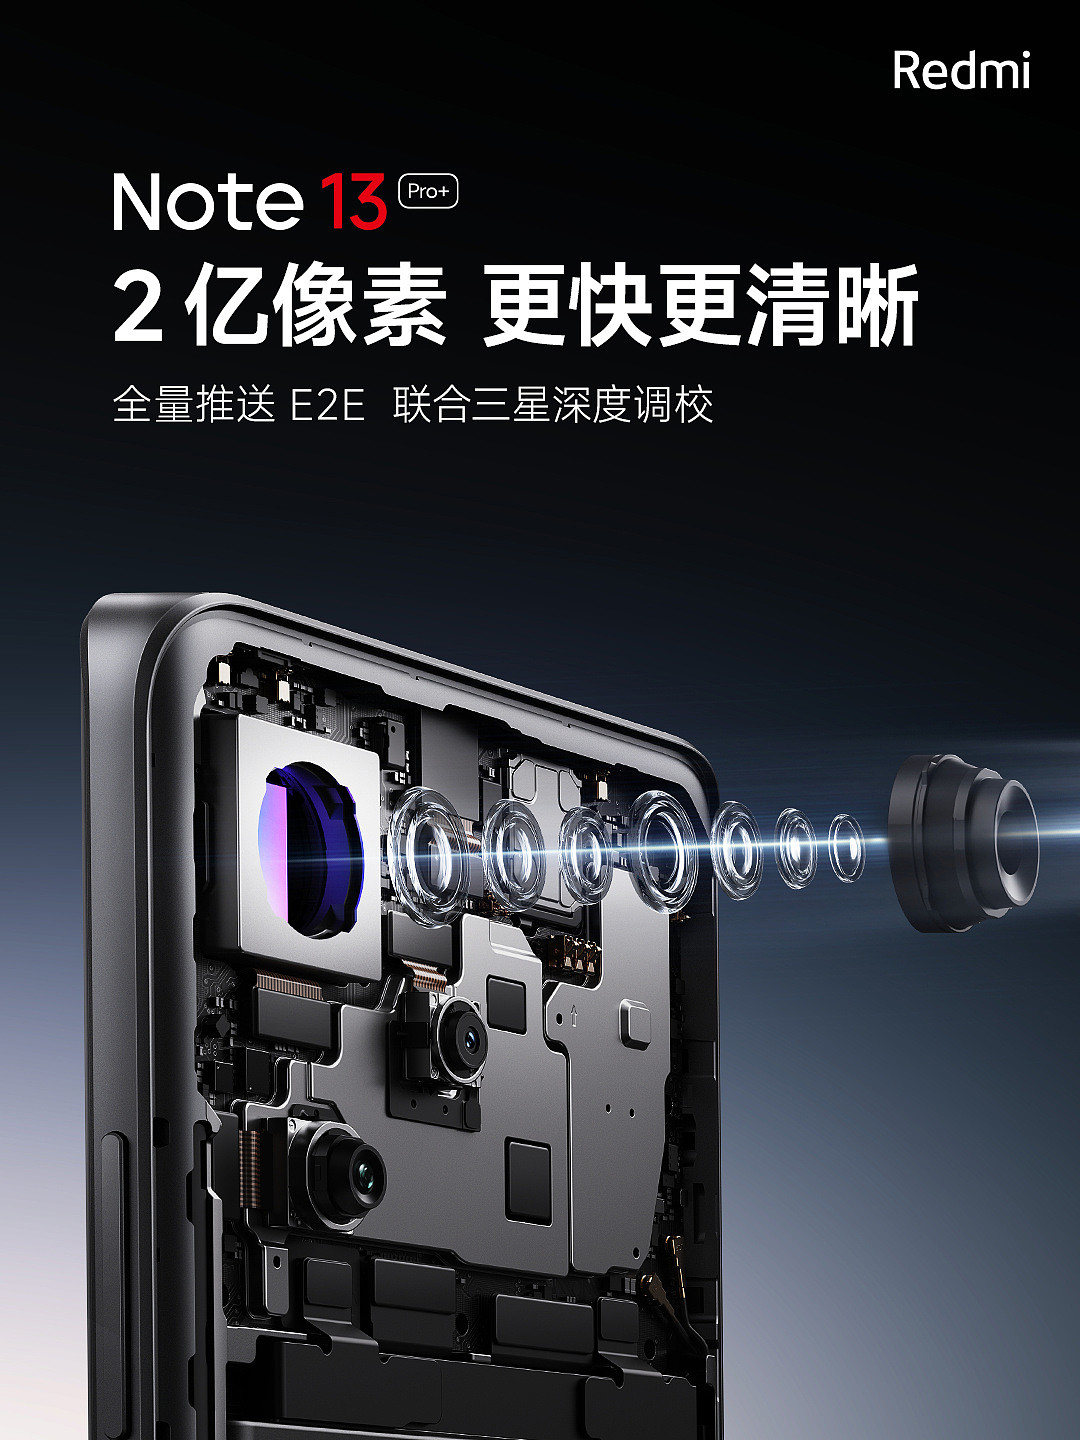 小米 Redmi Note 13 Pro+ 手机今日全量推送 E2E 影像技术，联合三星深度调校 - 1